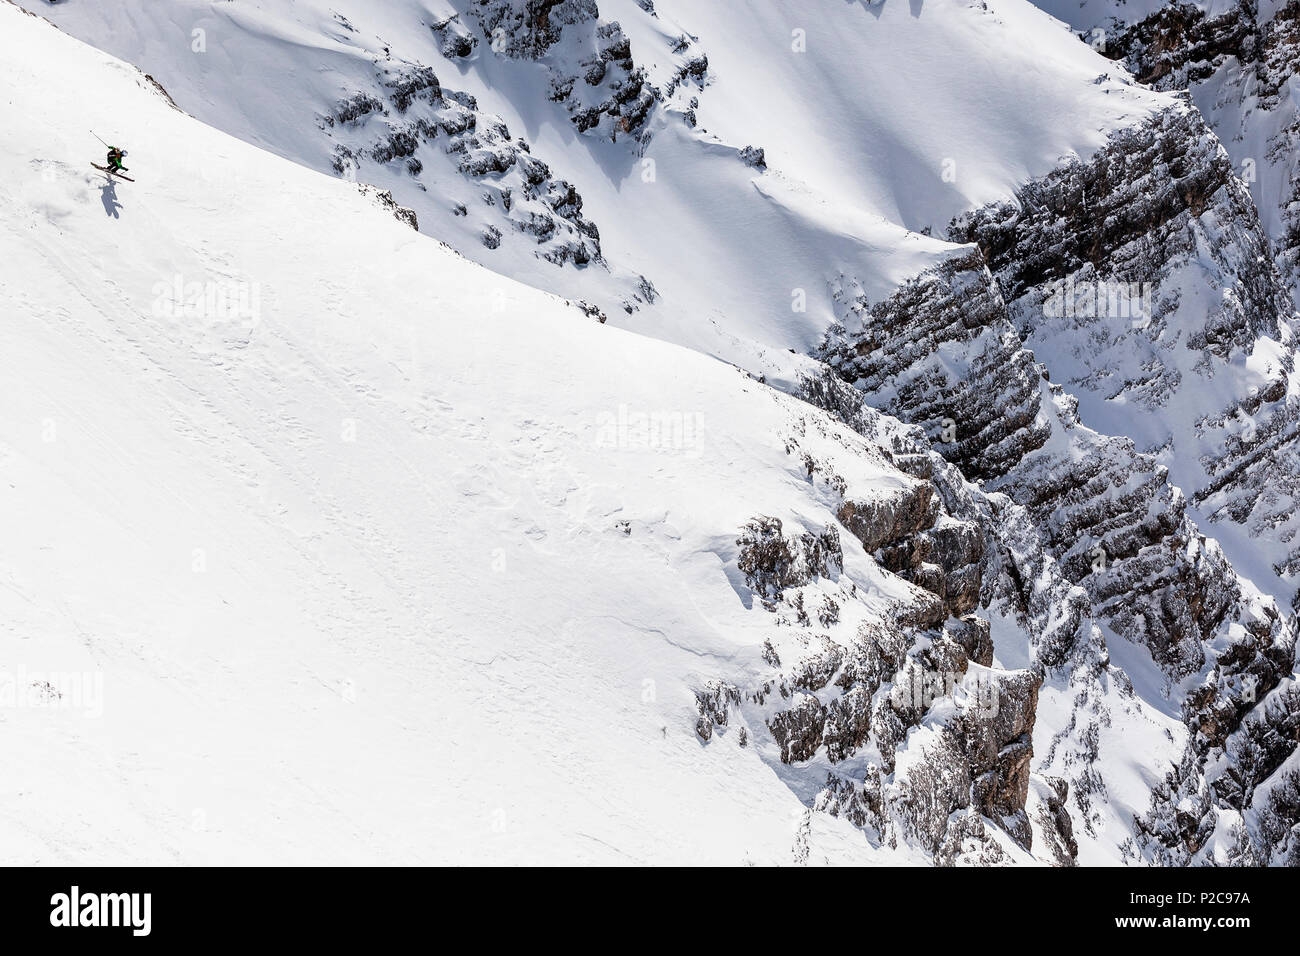 Backcountry skier, Neue-Welt-Abstieg, Zugspitze, Ehrwald, Tirol, Österreich Stockfoto